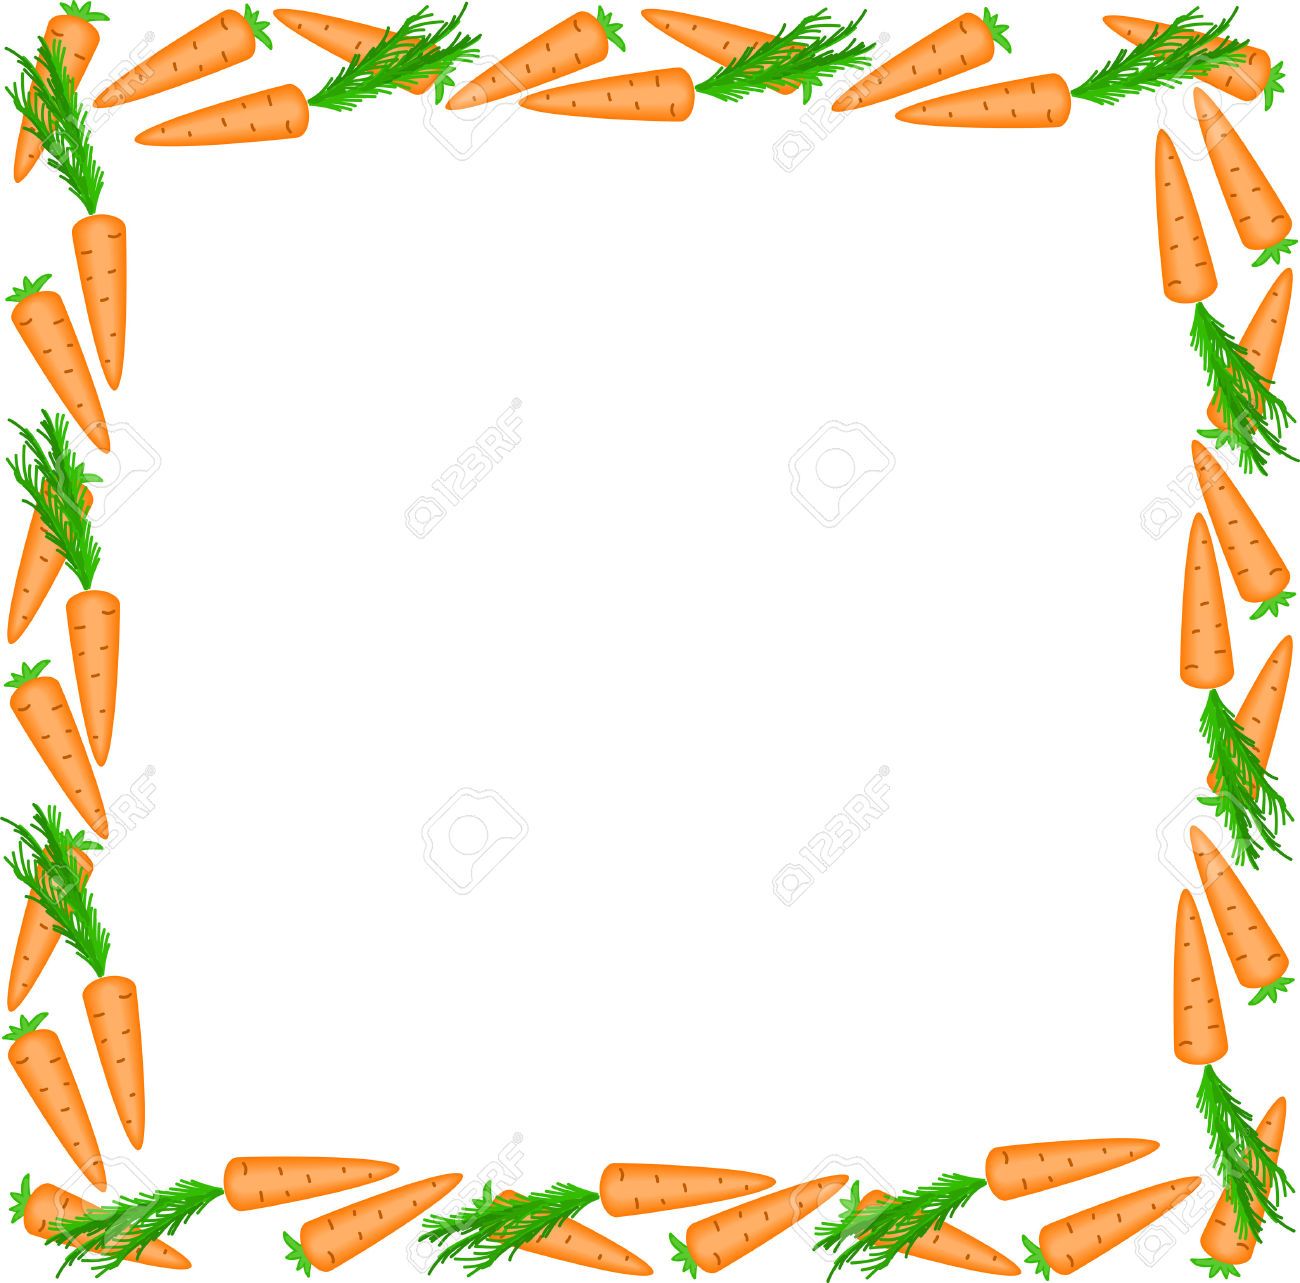 carrots clipart border